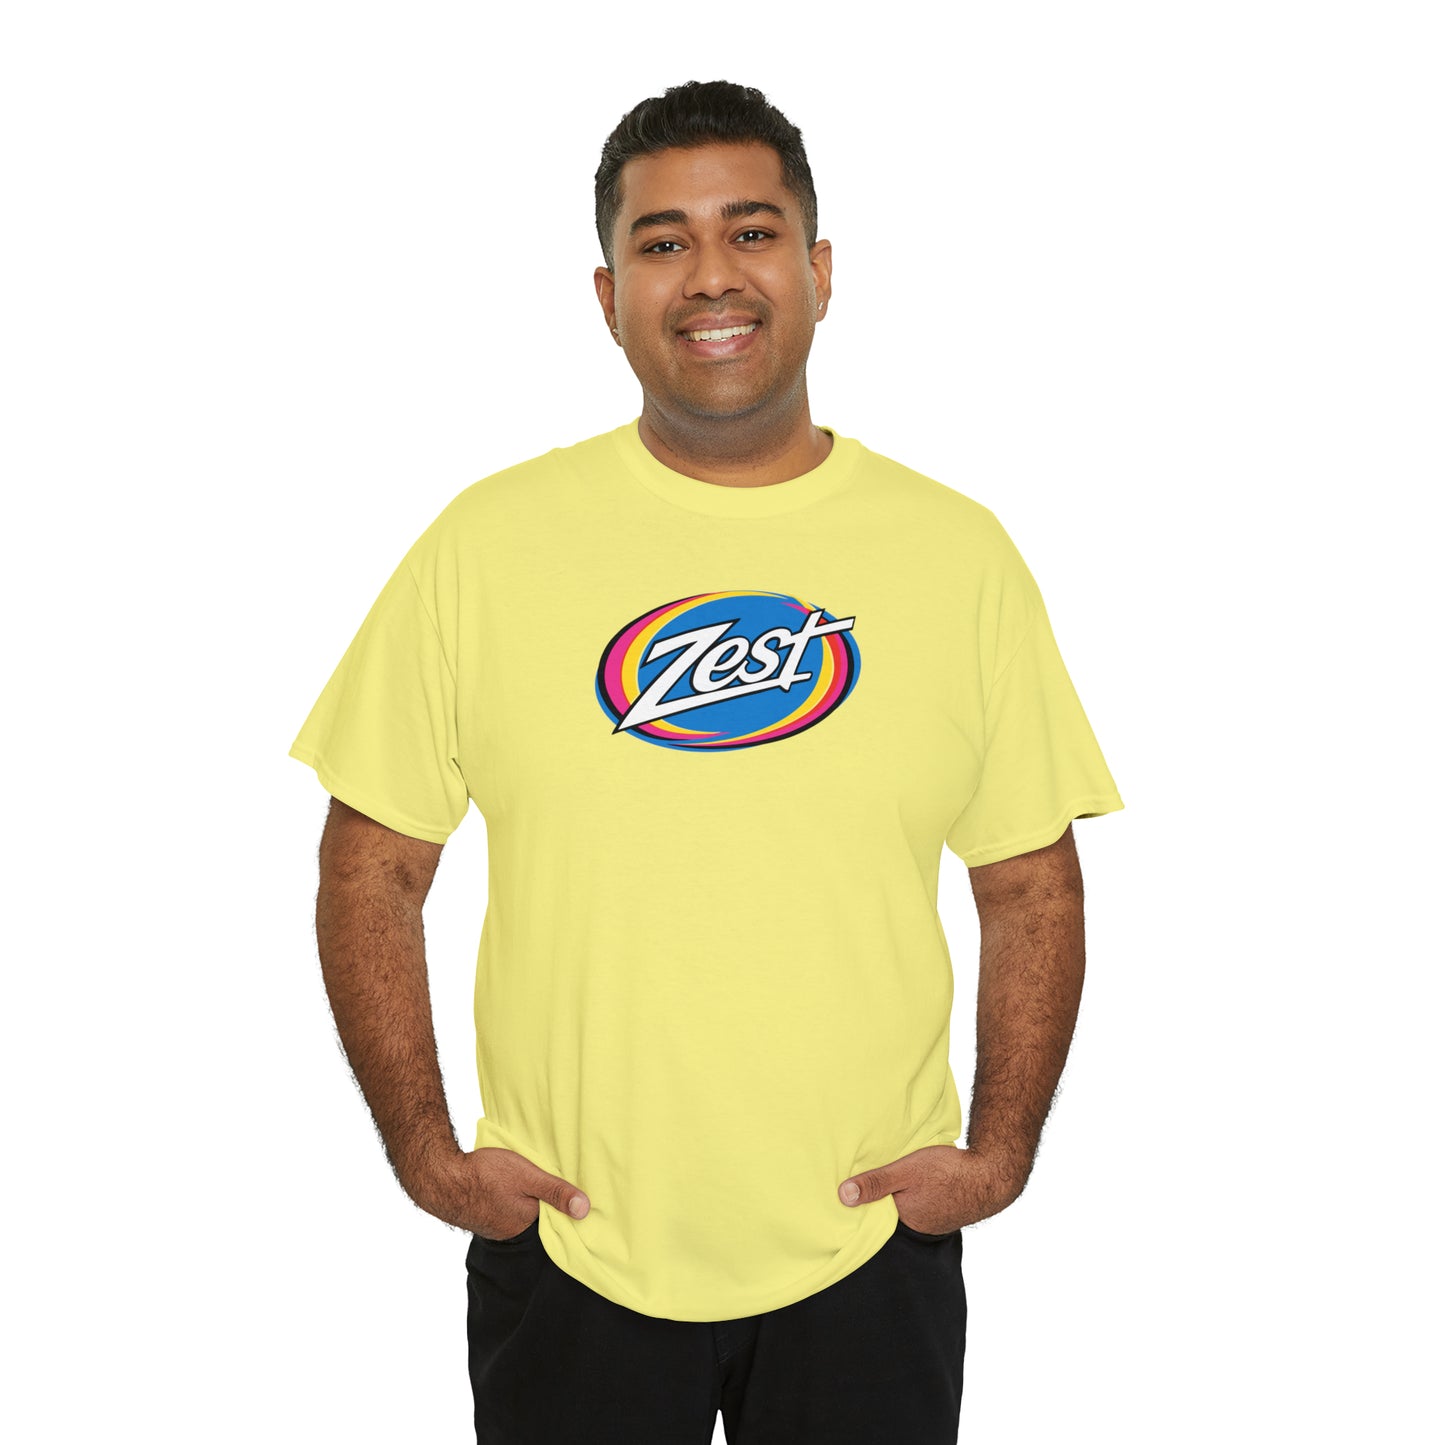 Zest T-Shirt